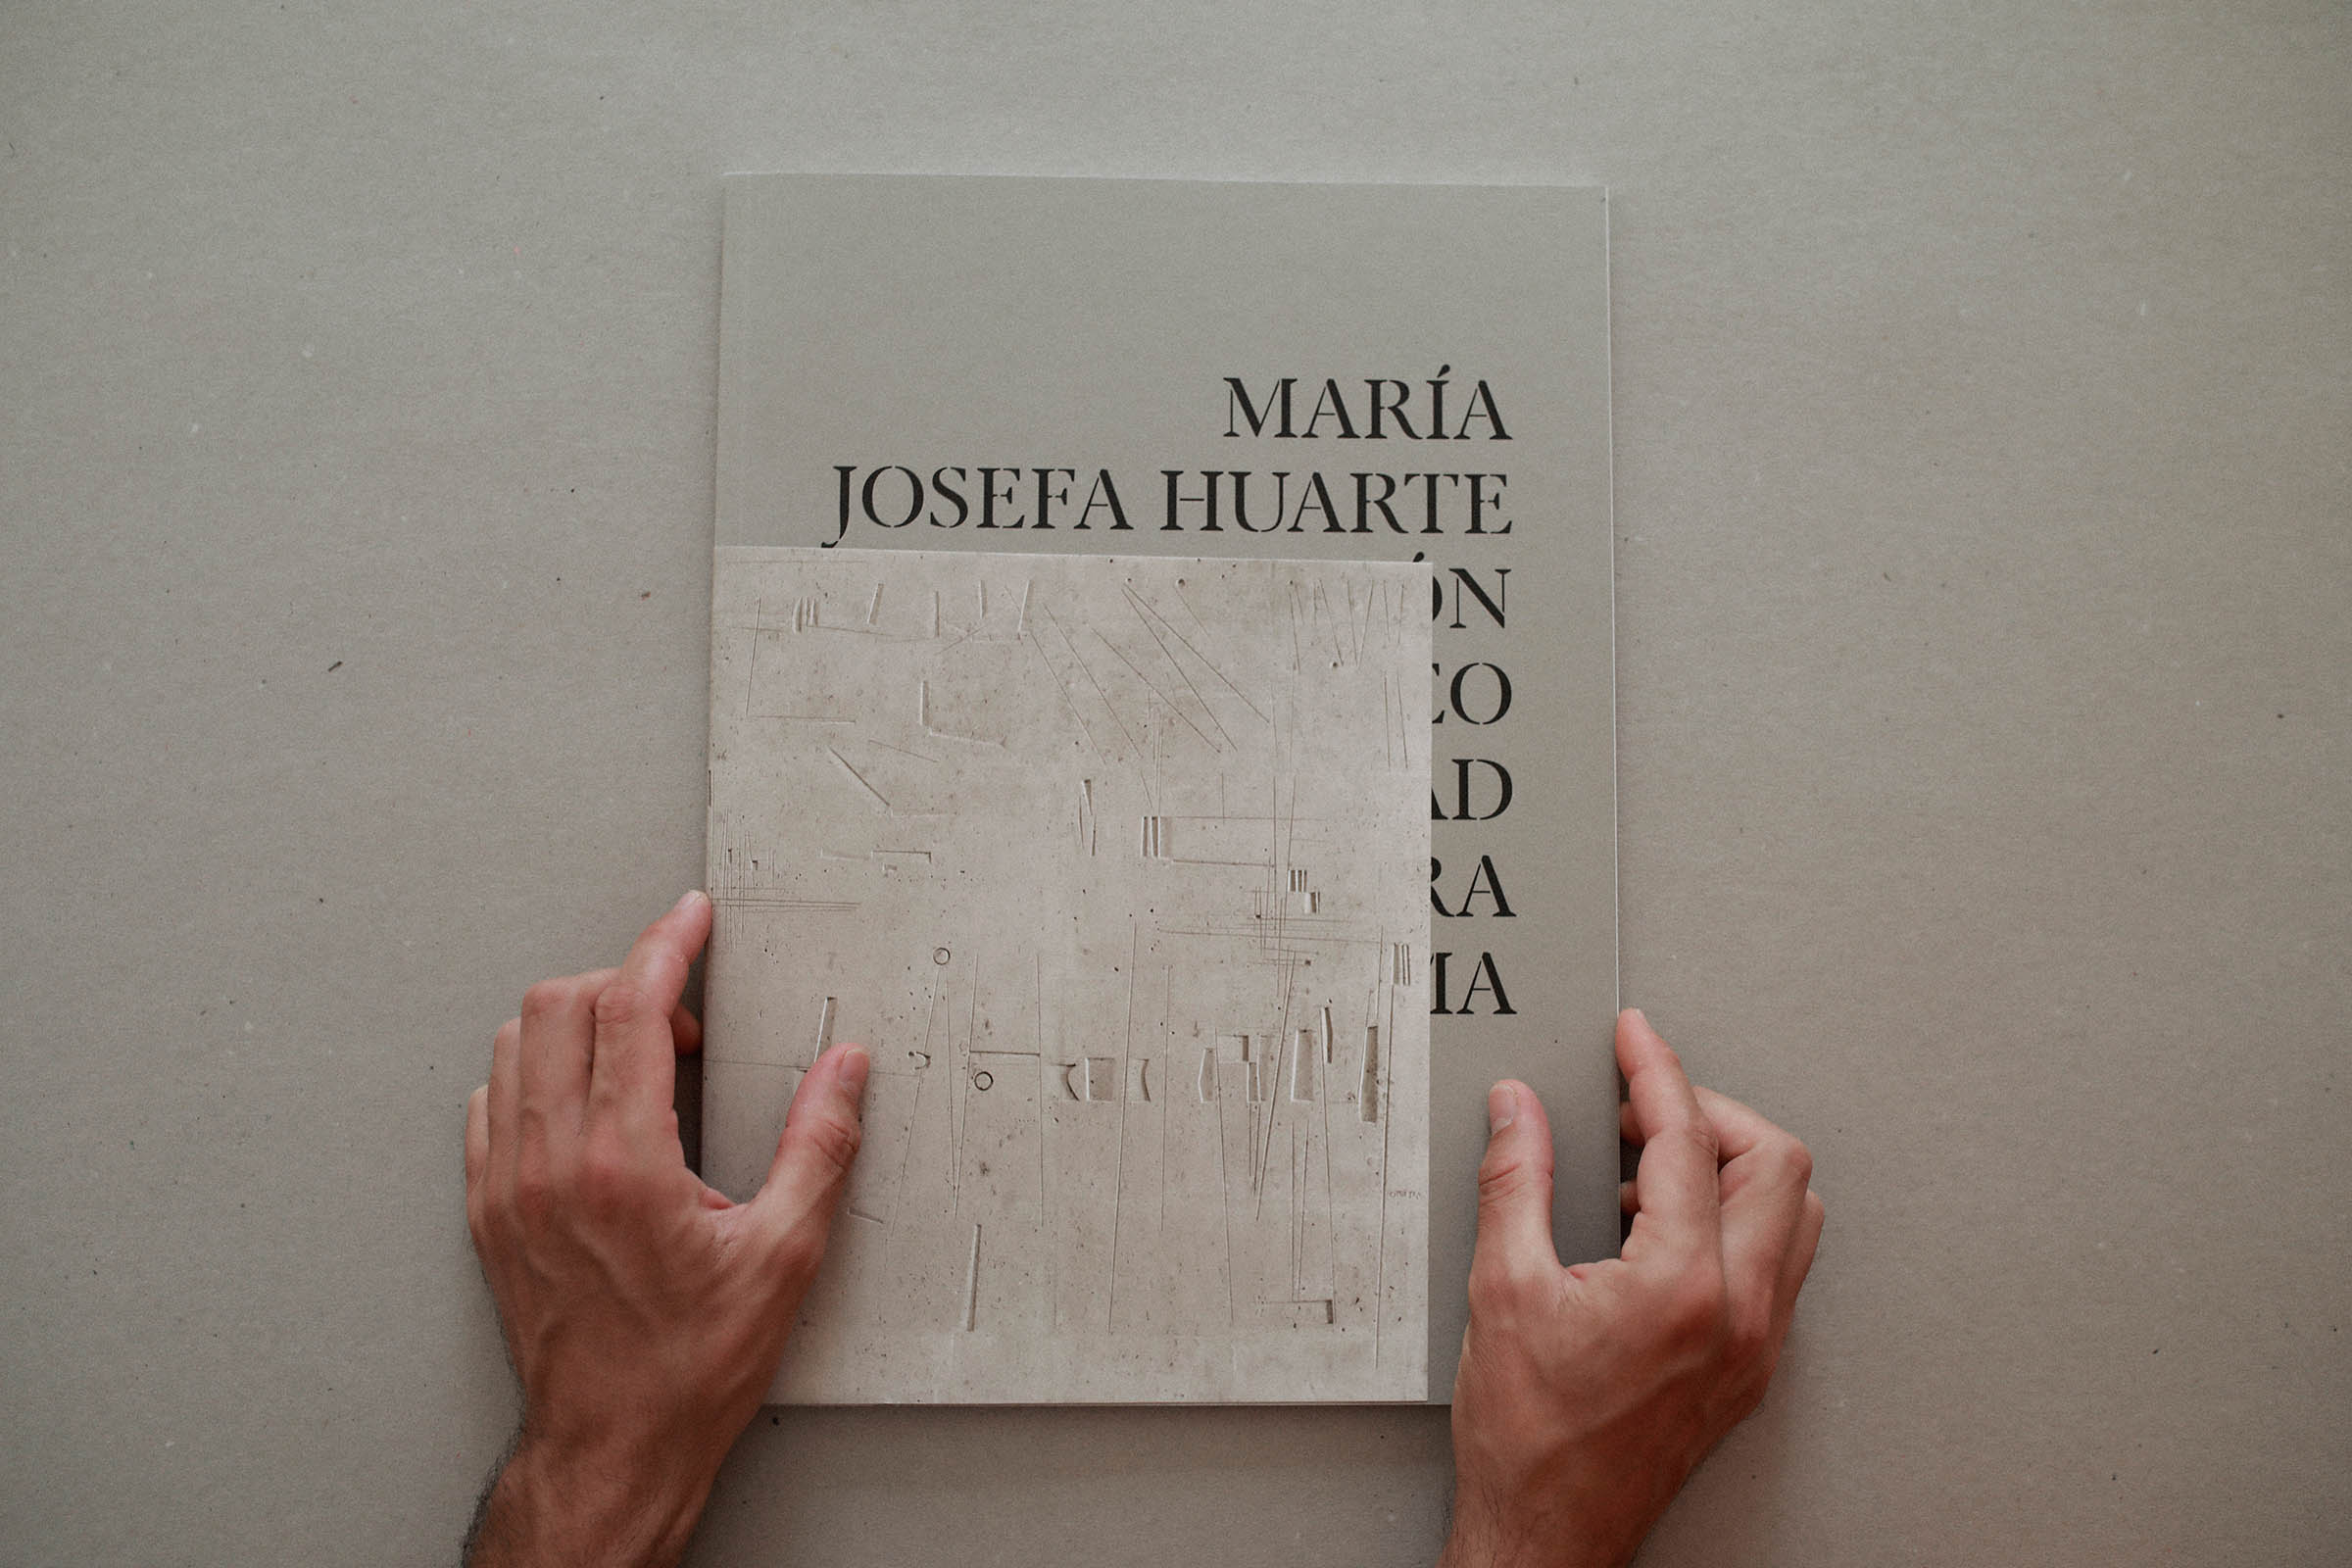 Colección Maria Josefa Huarte by Franziska - Creative Work